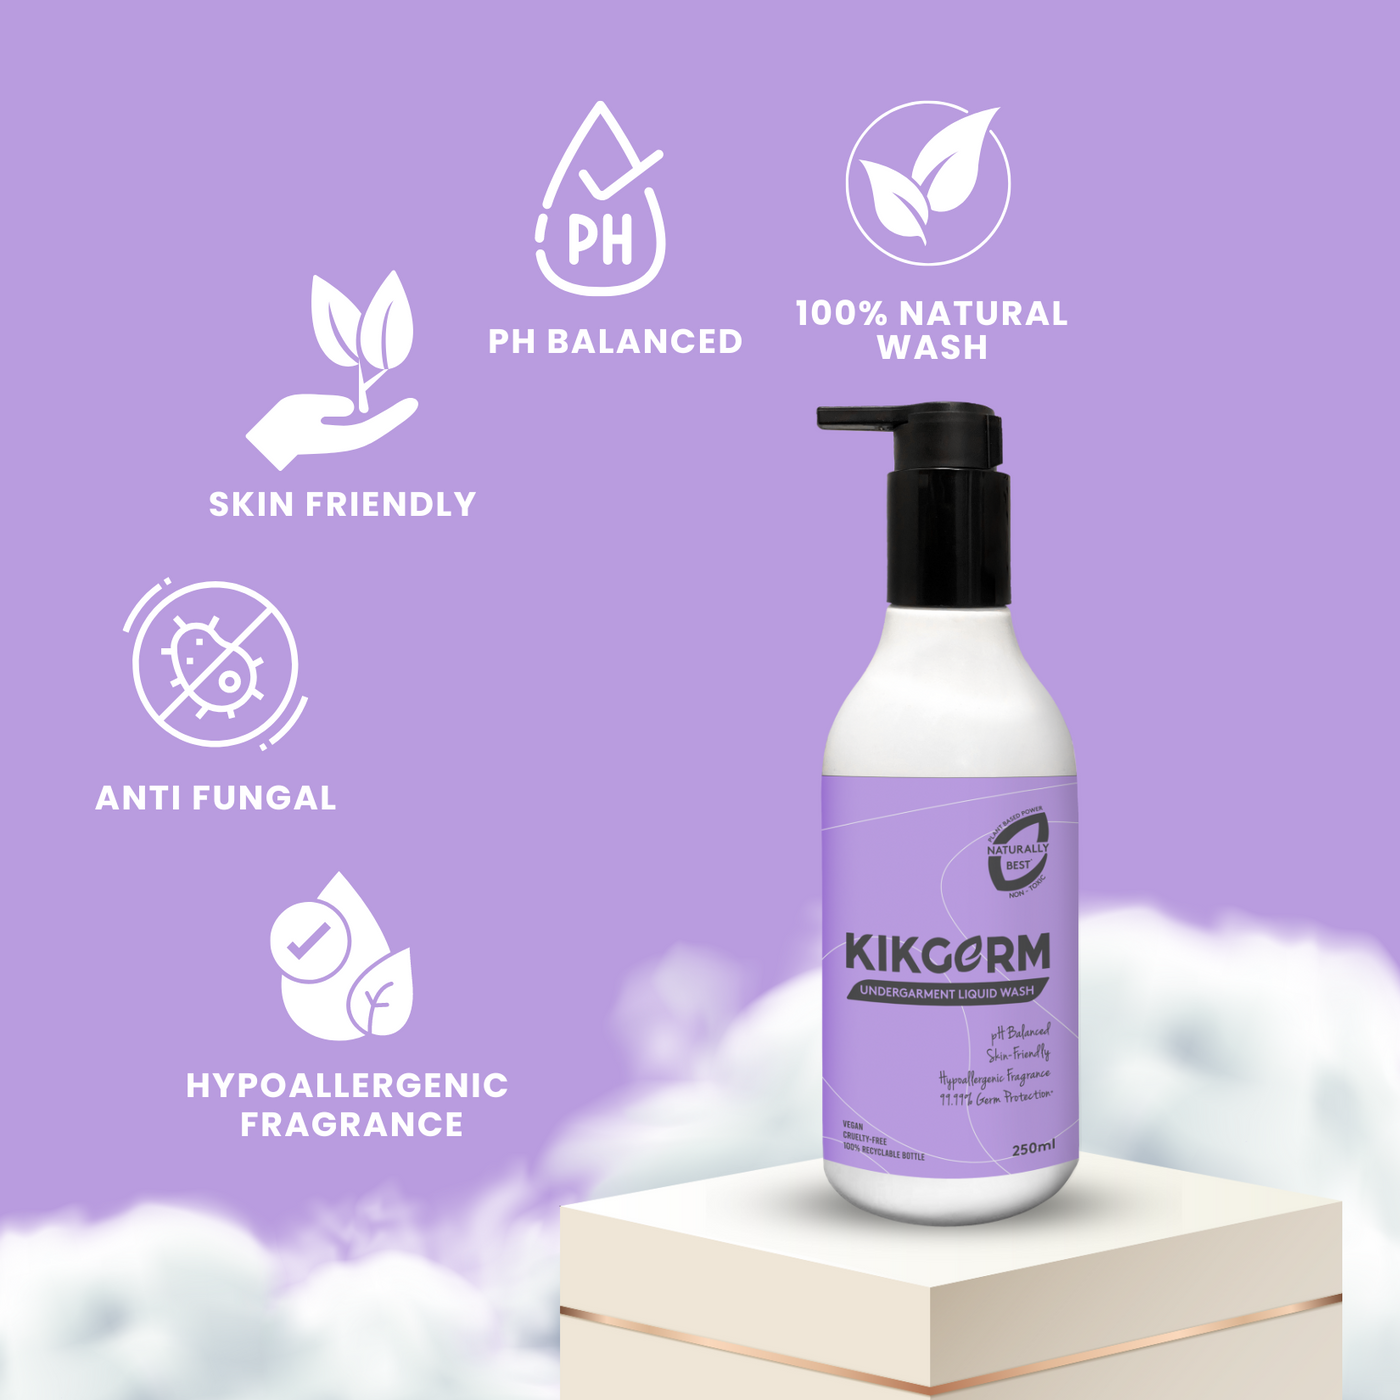 KIKGERM Natural Undergarment Liquid Detergent | 250ml